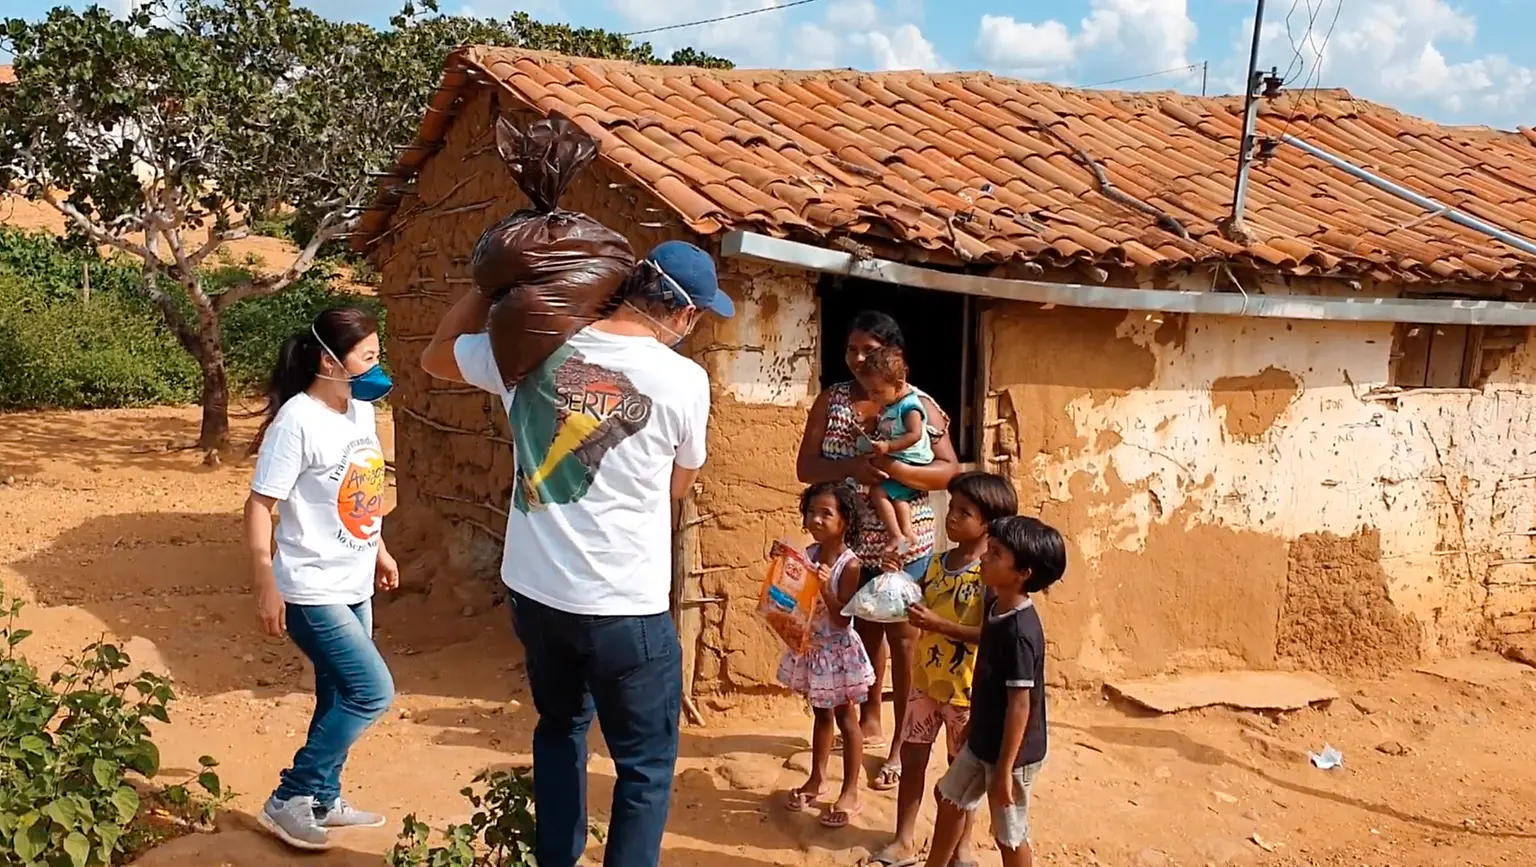 Amigos do Bem, no Brasil, distribuiu 60 mil cestas básicas, 20 mil kits de higiene e conseguiu abastecer cisternas com 25 milhões de litros de água.